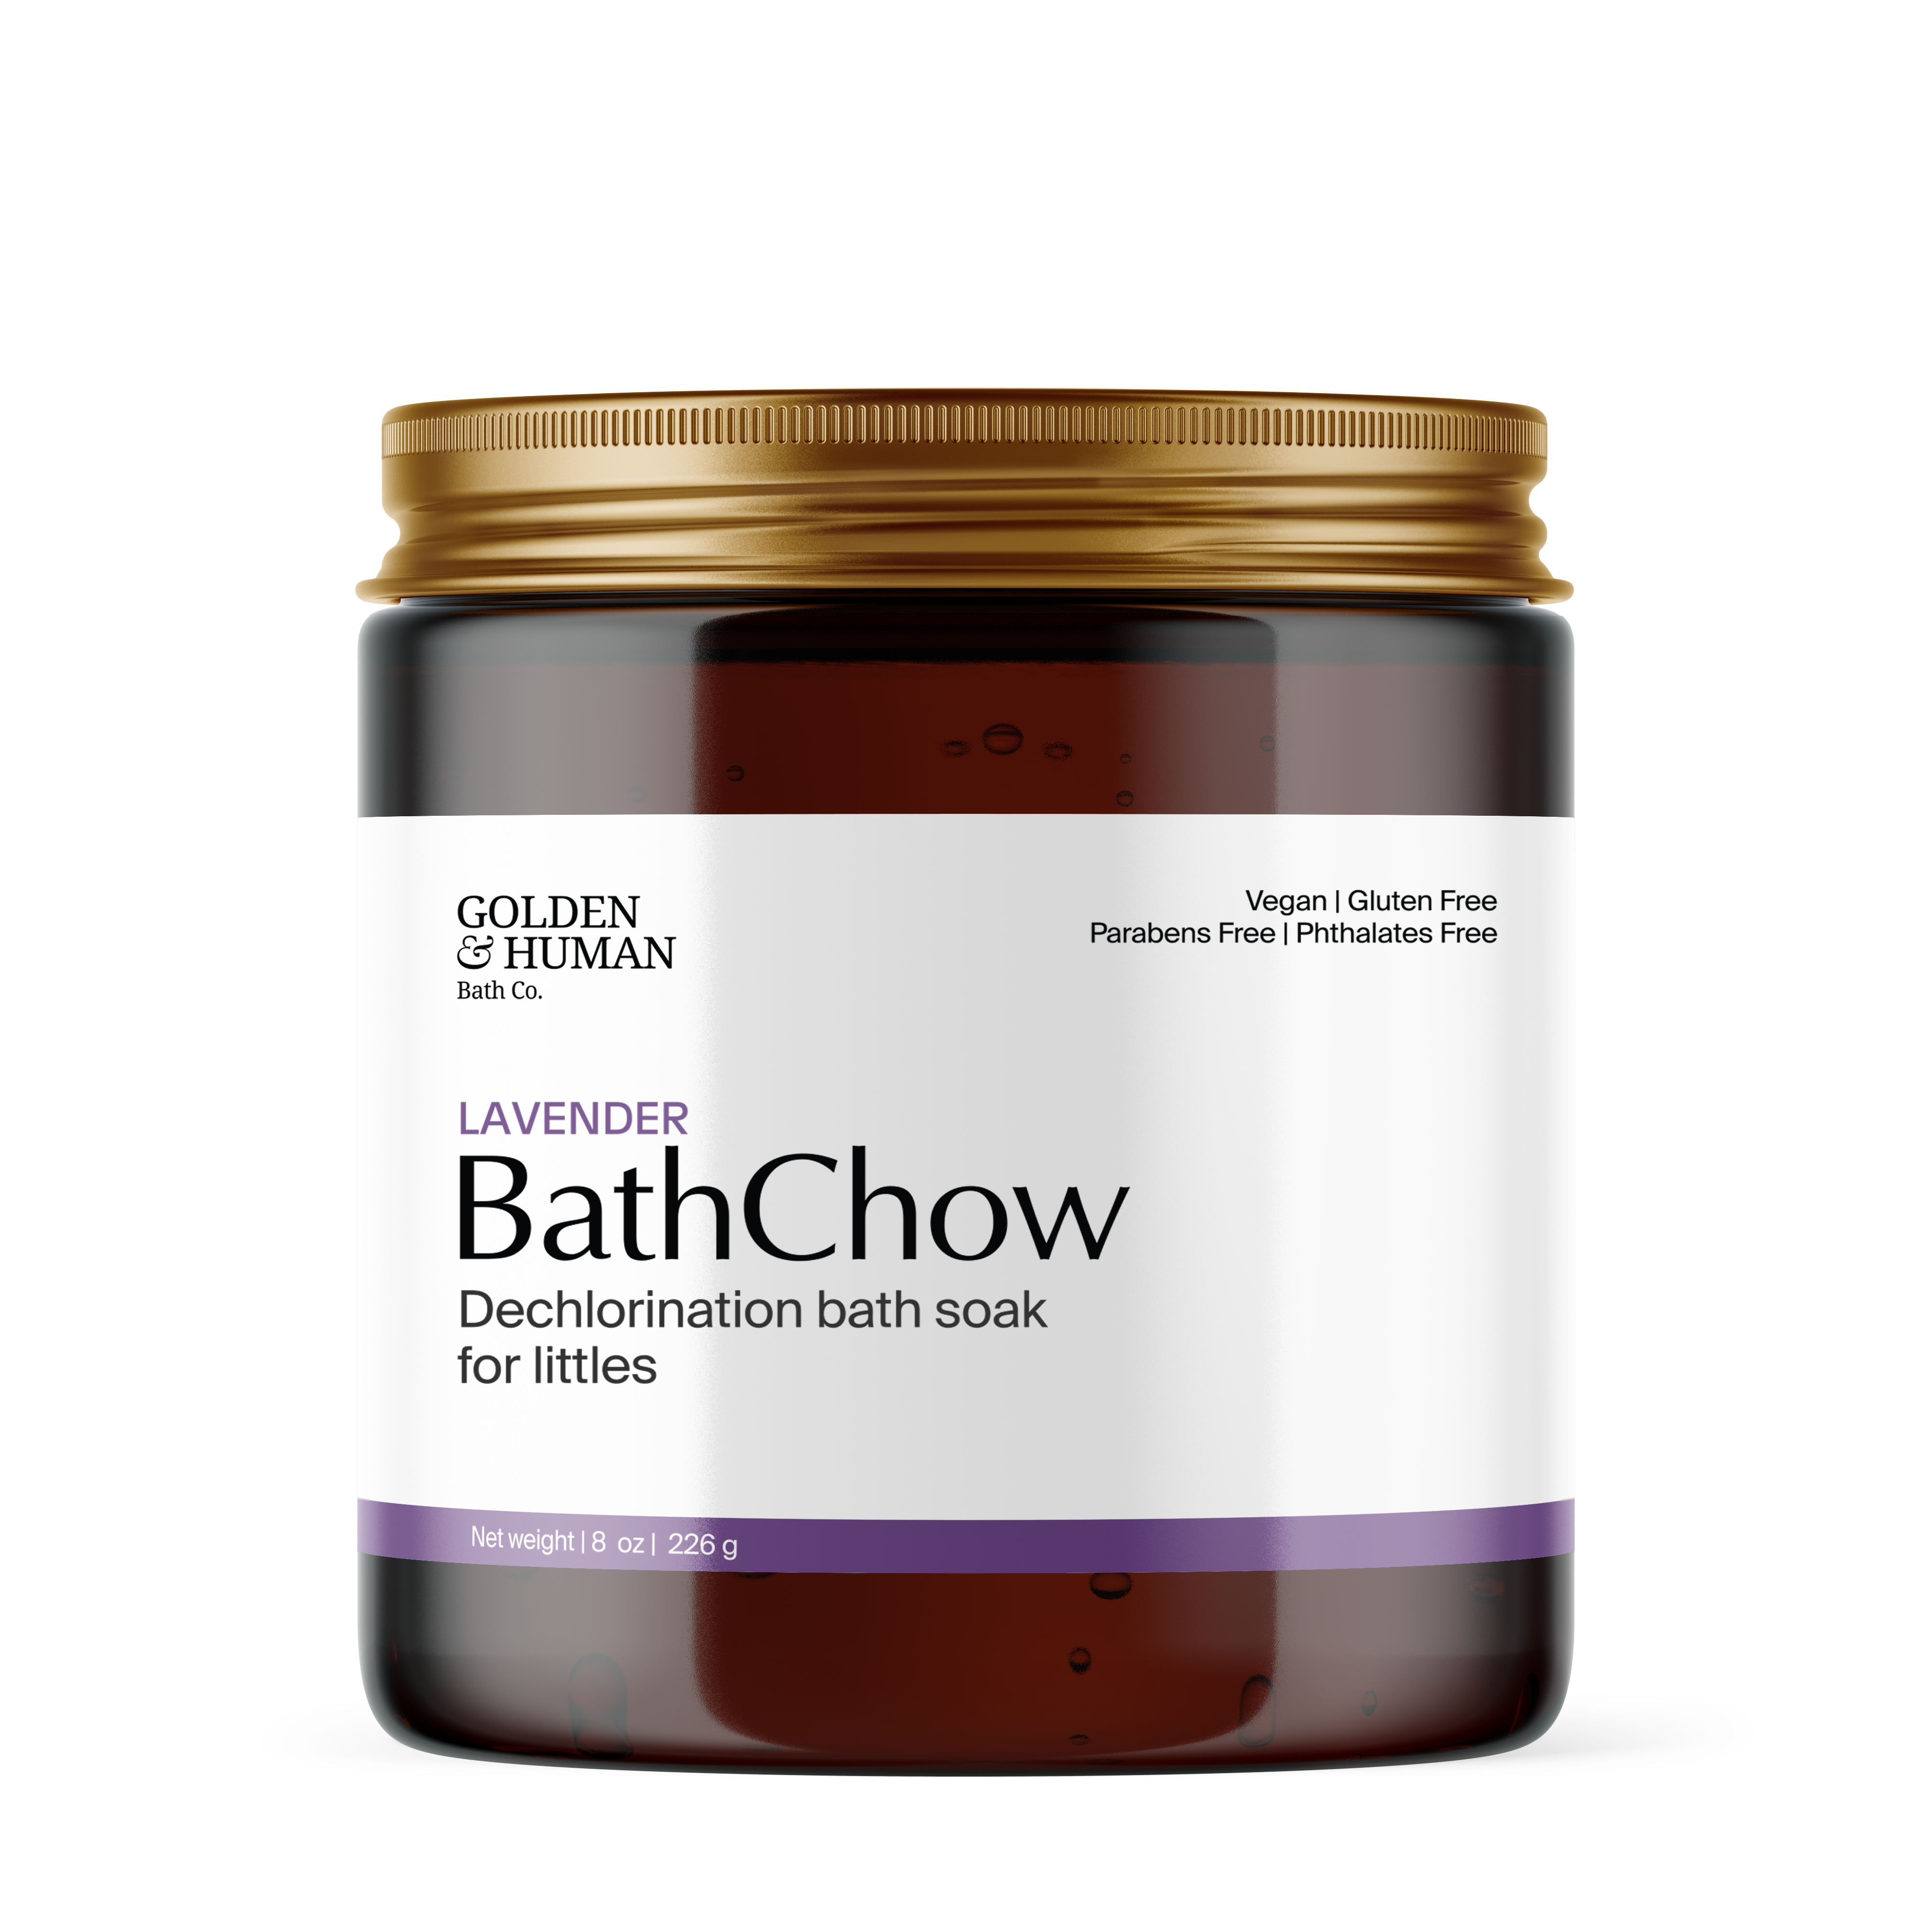 BathChow